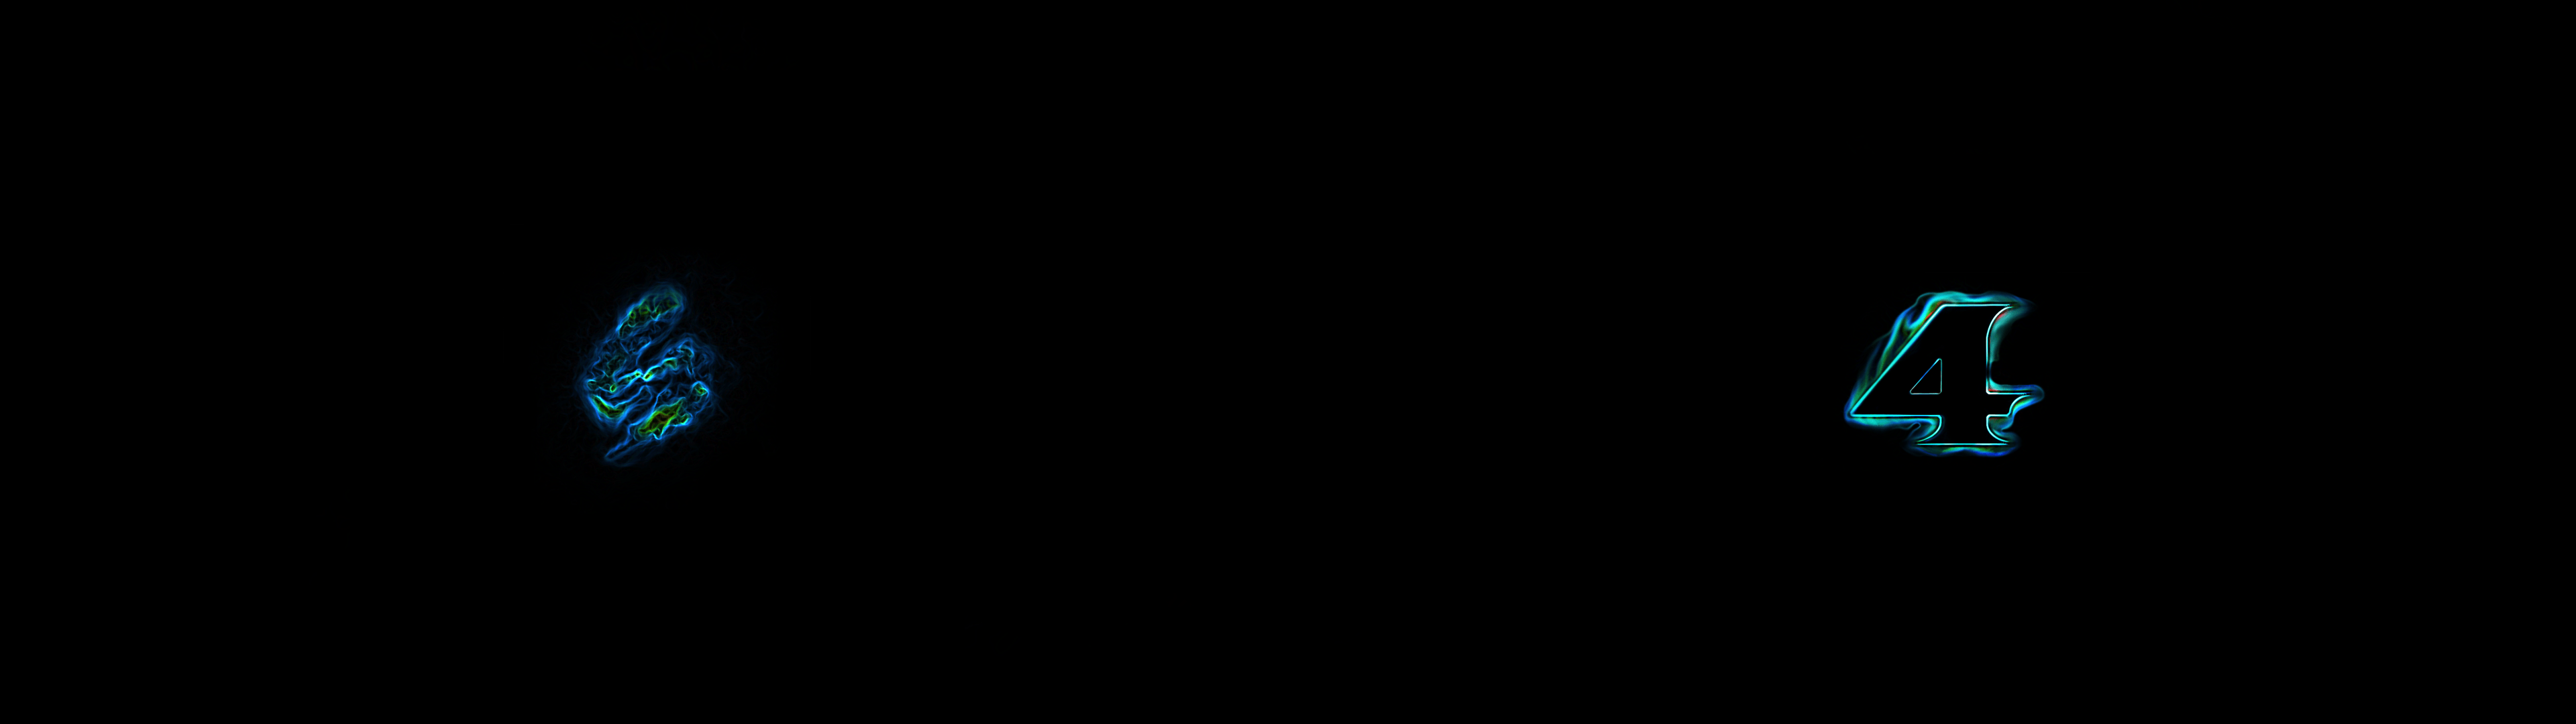 Hình nền màn hình kép 3840x1080 Metroid Prime 4: Metroid